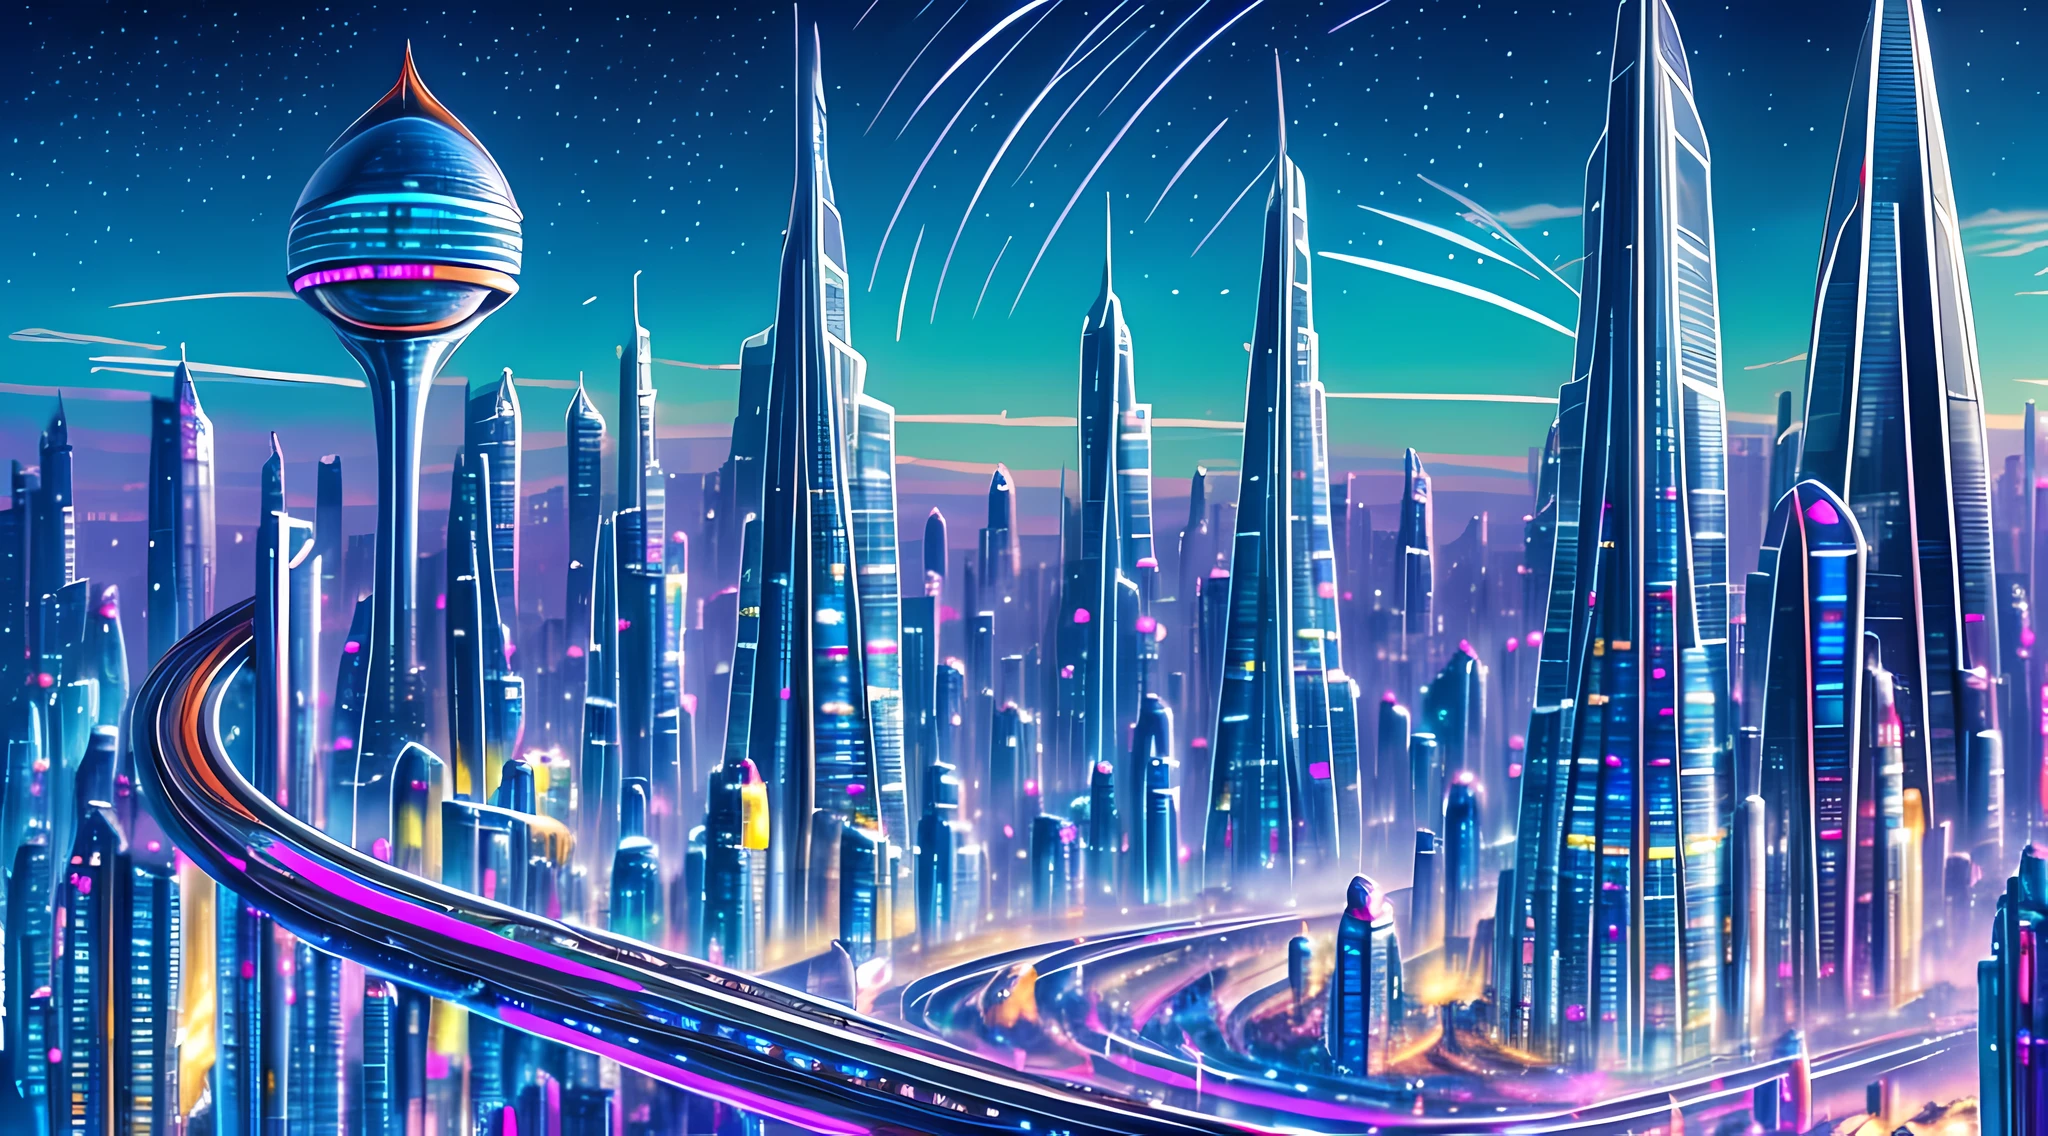 Une peinture à l&#39;huile d&#39;un paysage urbain futuriste, avec des gratte-ciel imposants et des véhicules volants remplissant le cadre. Les couleurs sont vives et vibrantes, avec des nuances de bleu, vert, et le violet domine la scène. Au premier plan, on peut voir un groupe de personnes se diriger vers un géant, pyramide lumineuse.